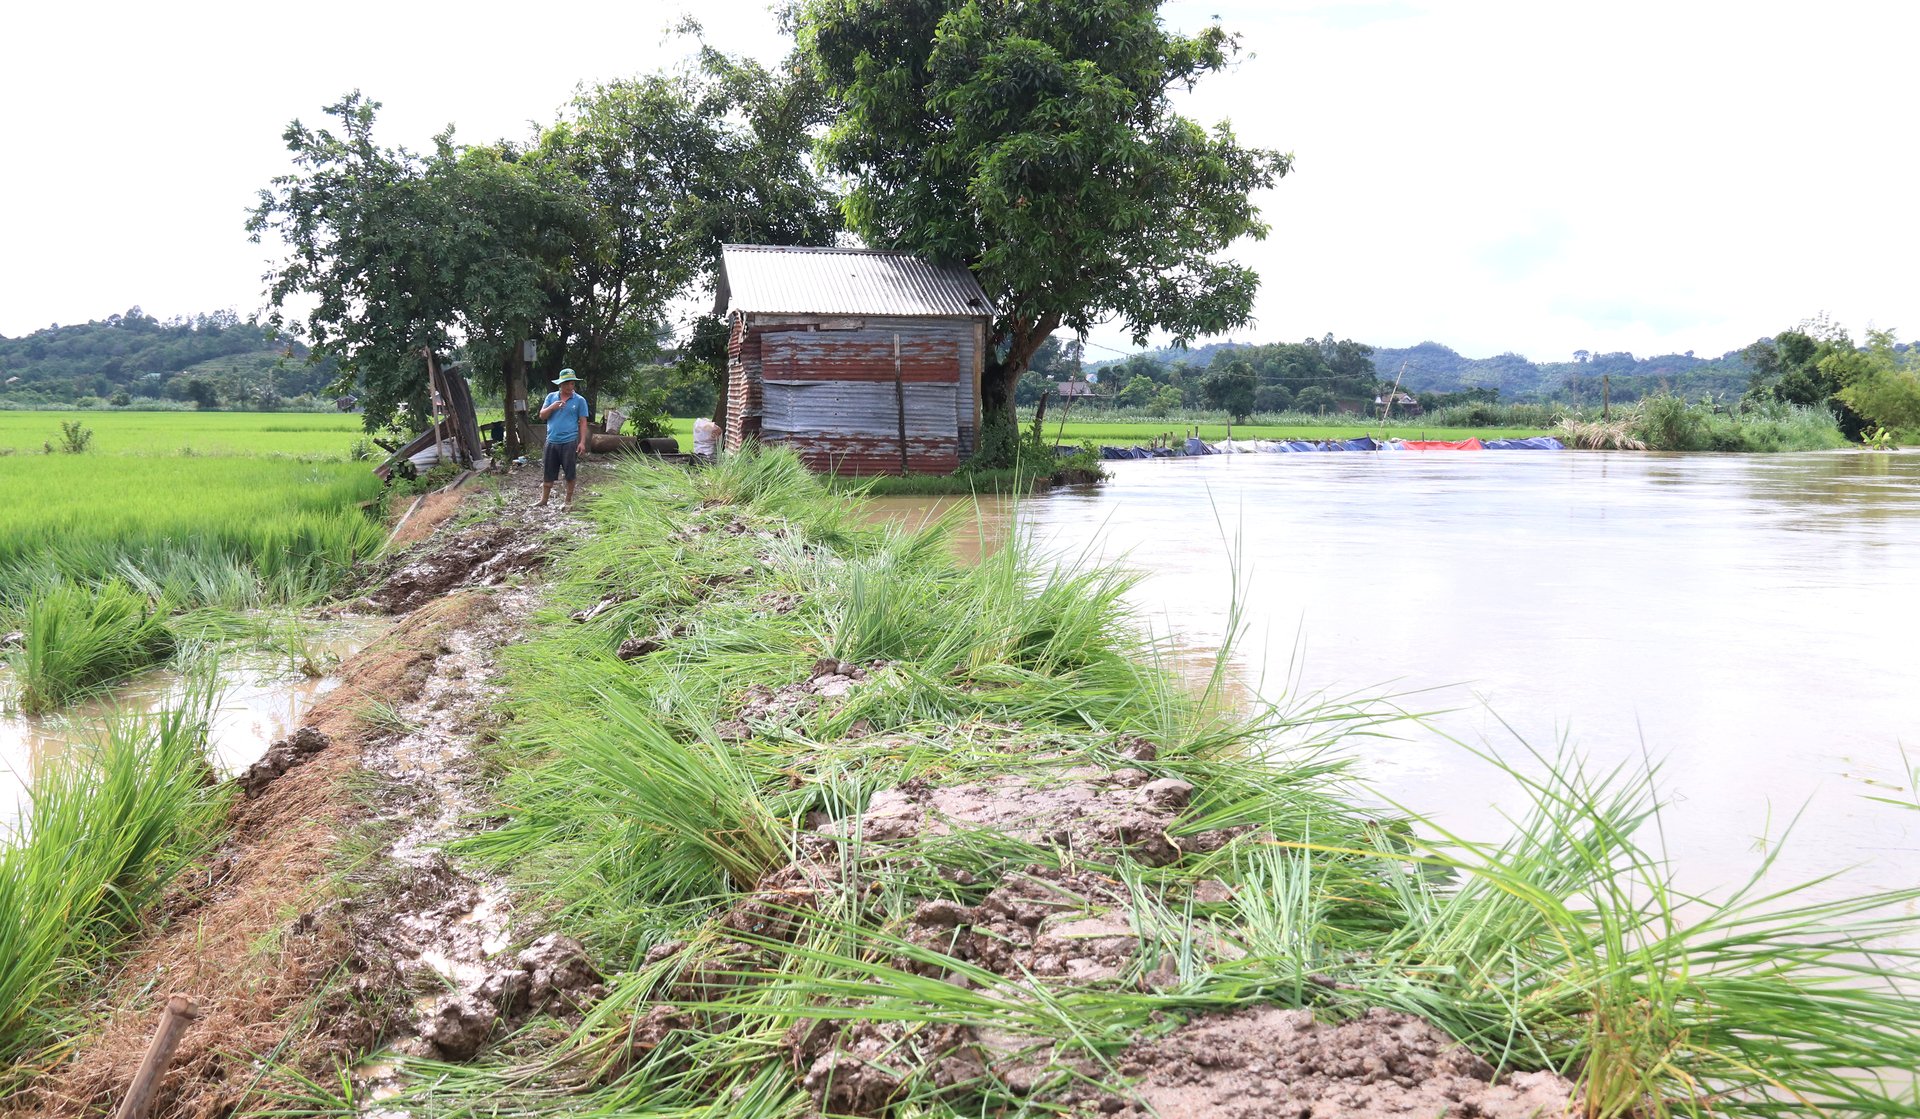 Đoạn bờ đê bị vỡ được gia cố tạm thời để cứu hàng nghìn ha lúa. Ảnh: Quang Yên.